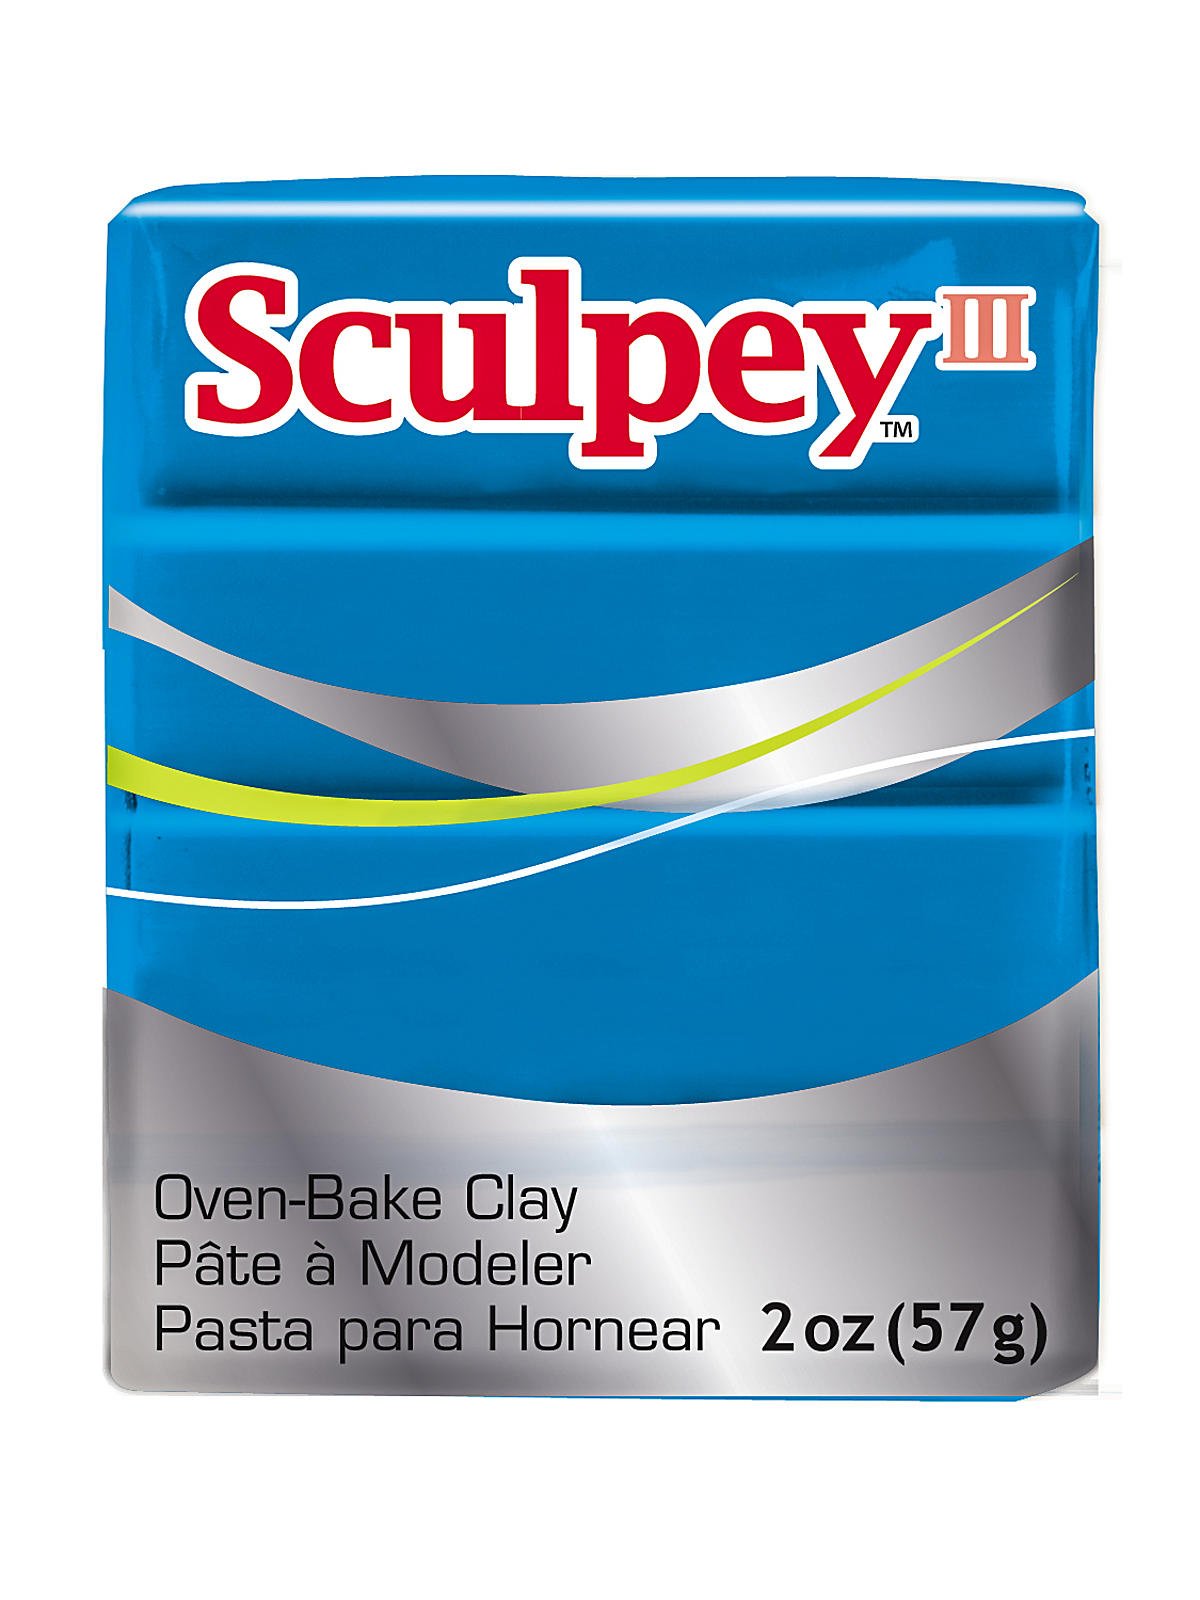 Sculpey Sculpey III Oven-Bake Polymer Clay 2oz Beige 093